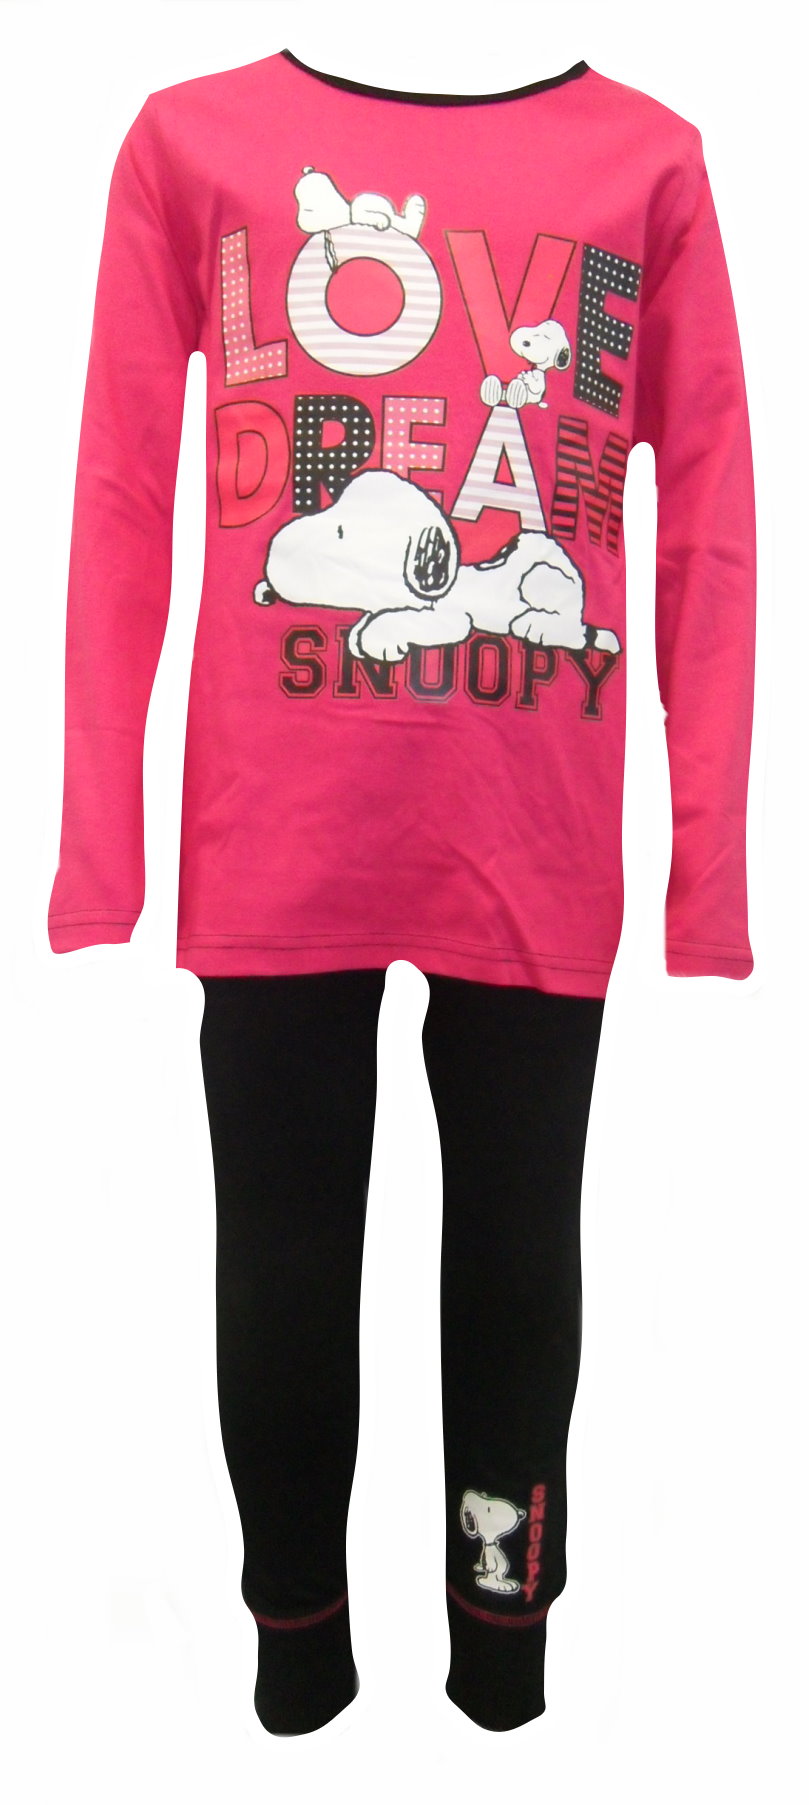 Snoopy Girl's Pyjamas PG131.JPG  by Thingimijigs